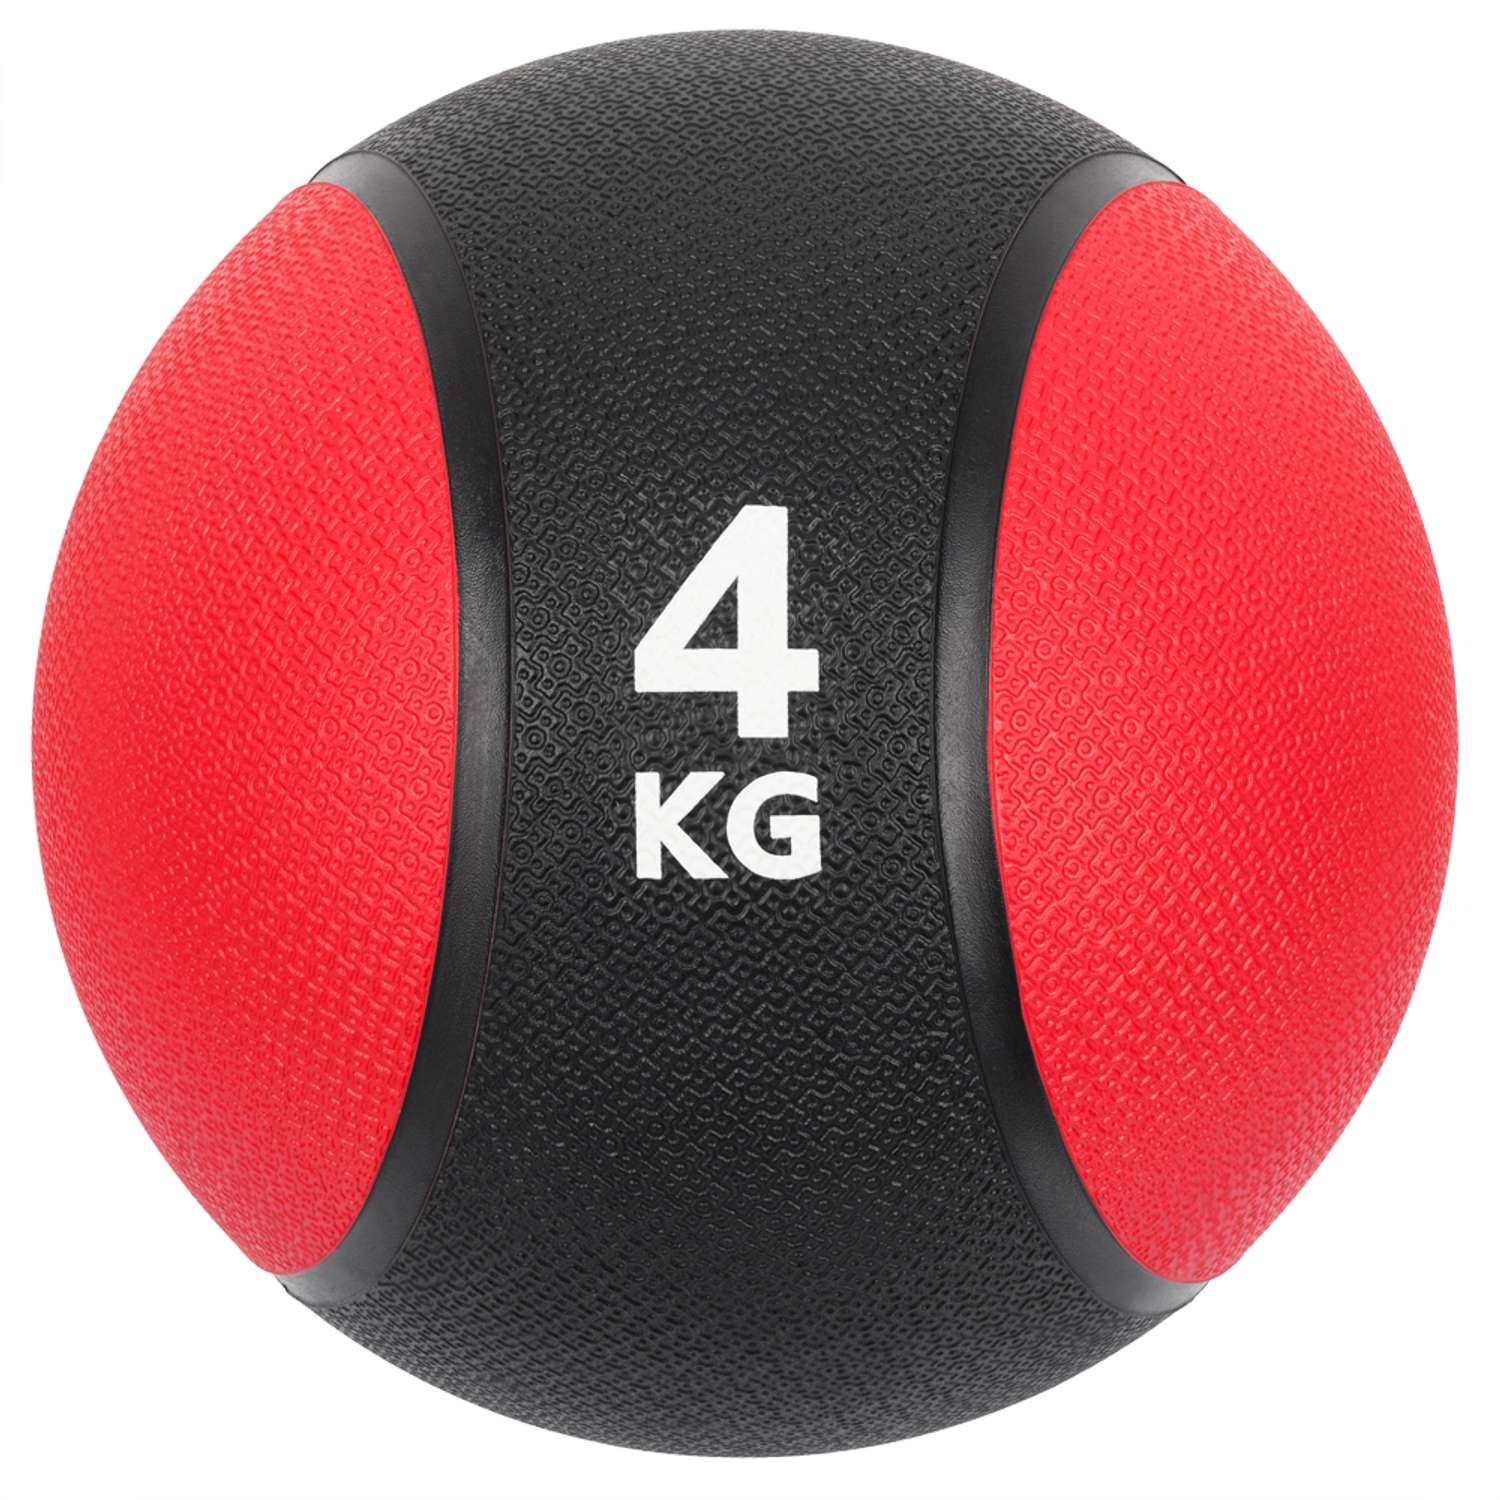 Медбол STRONG BODY медицинский мяч для фитнеса черно-красный 4 кг - фото 3